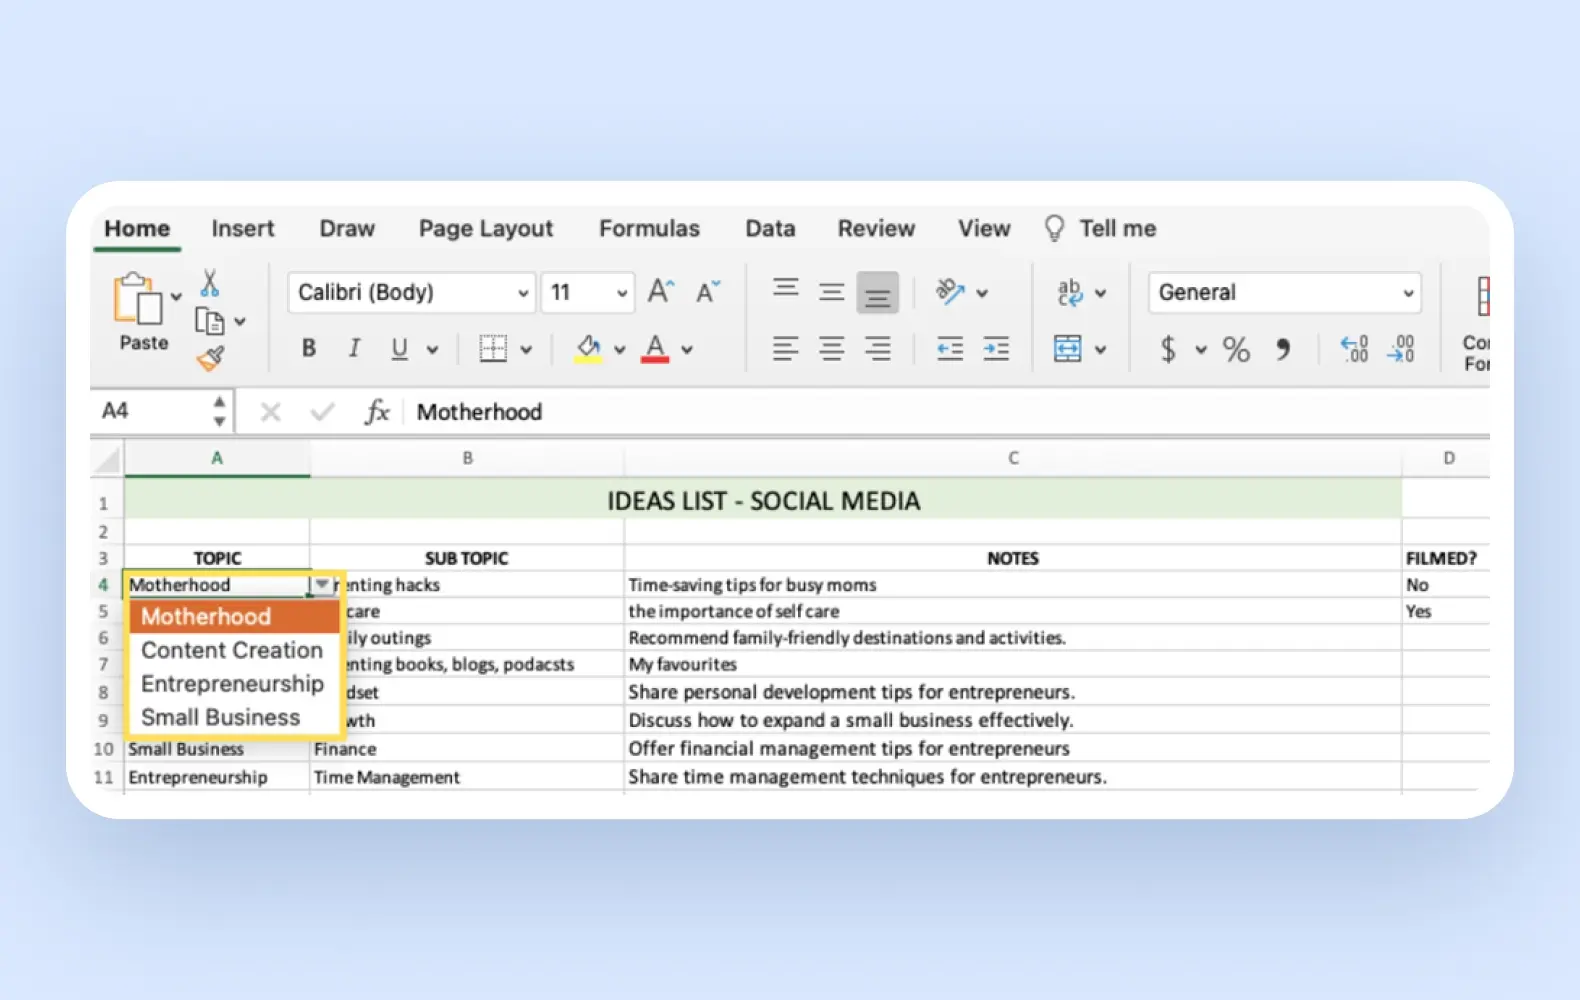 A screenshot of a categorized spreadsheet